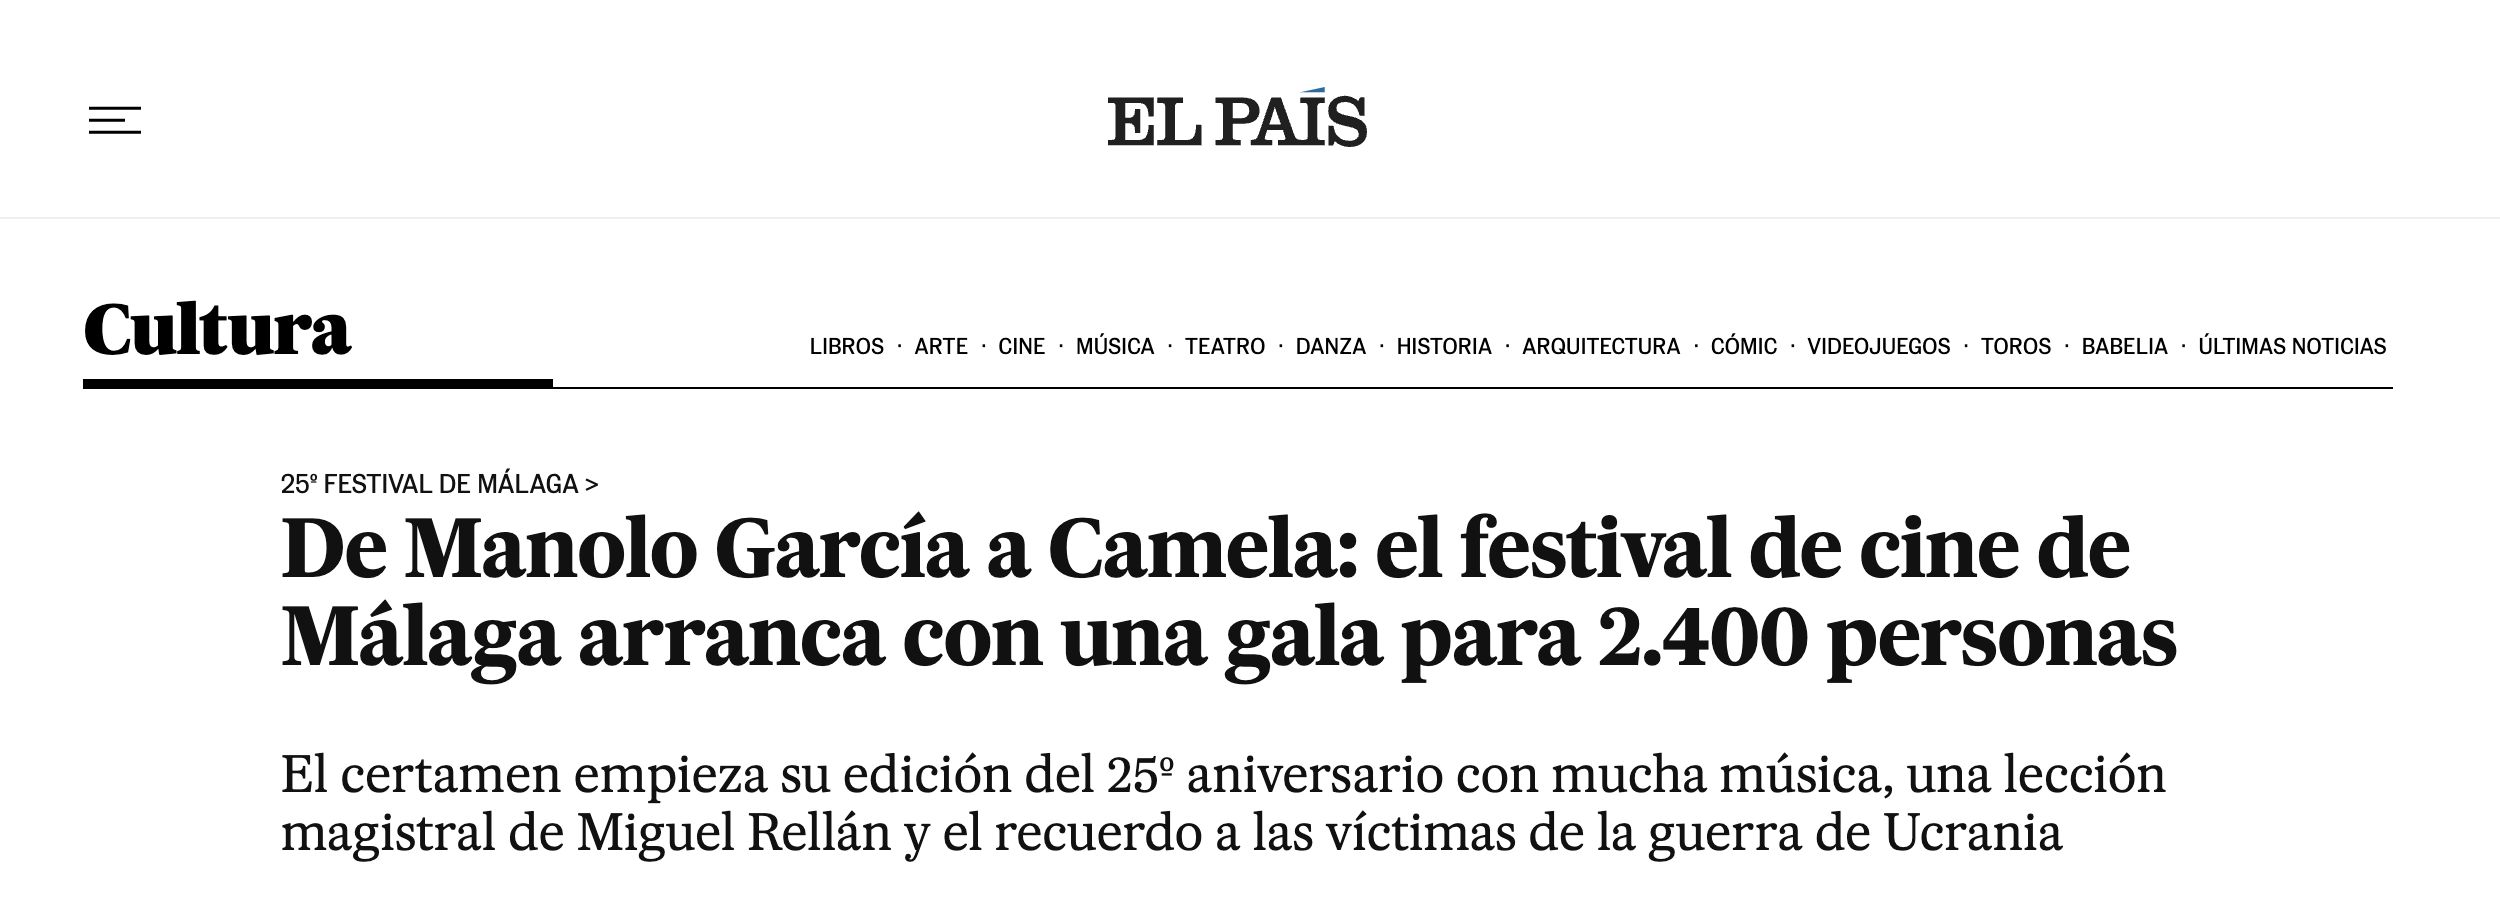 Kerem Bürsin İspanya’nın en büyük gazetelerinden El Pais’de! İspanyol hayranları “El Turco” diye alkışladı! 8